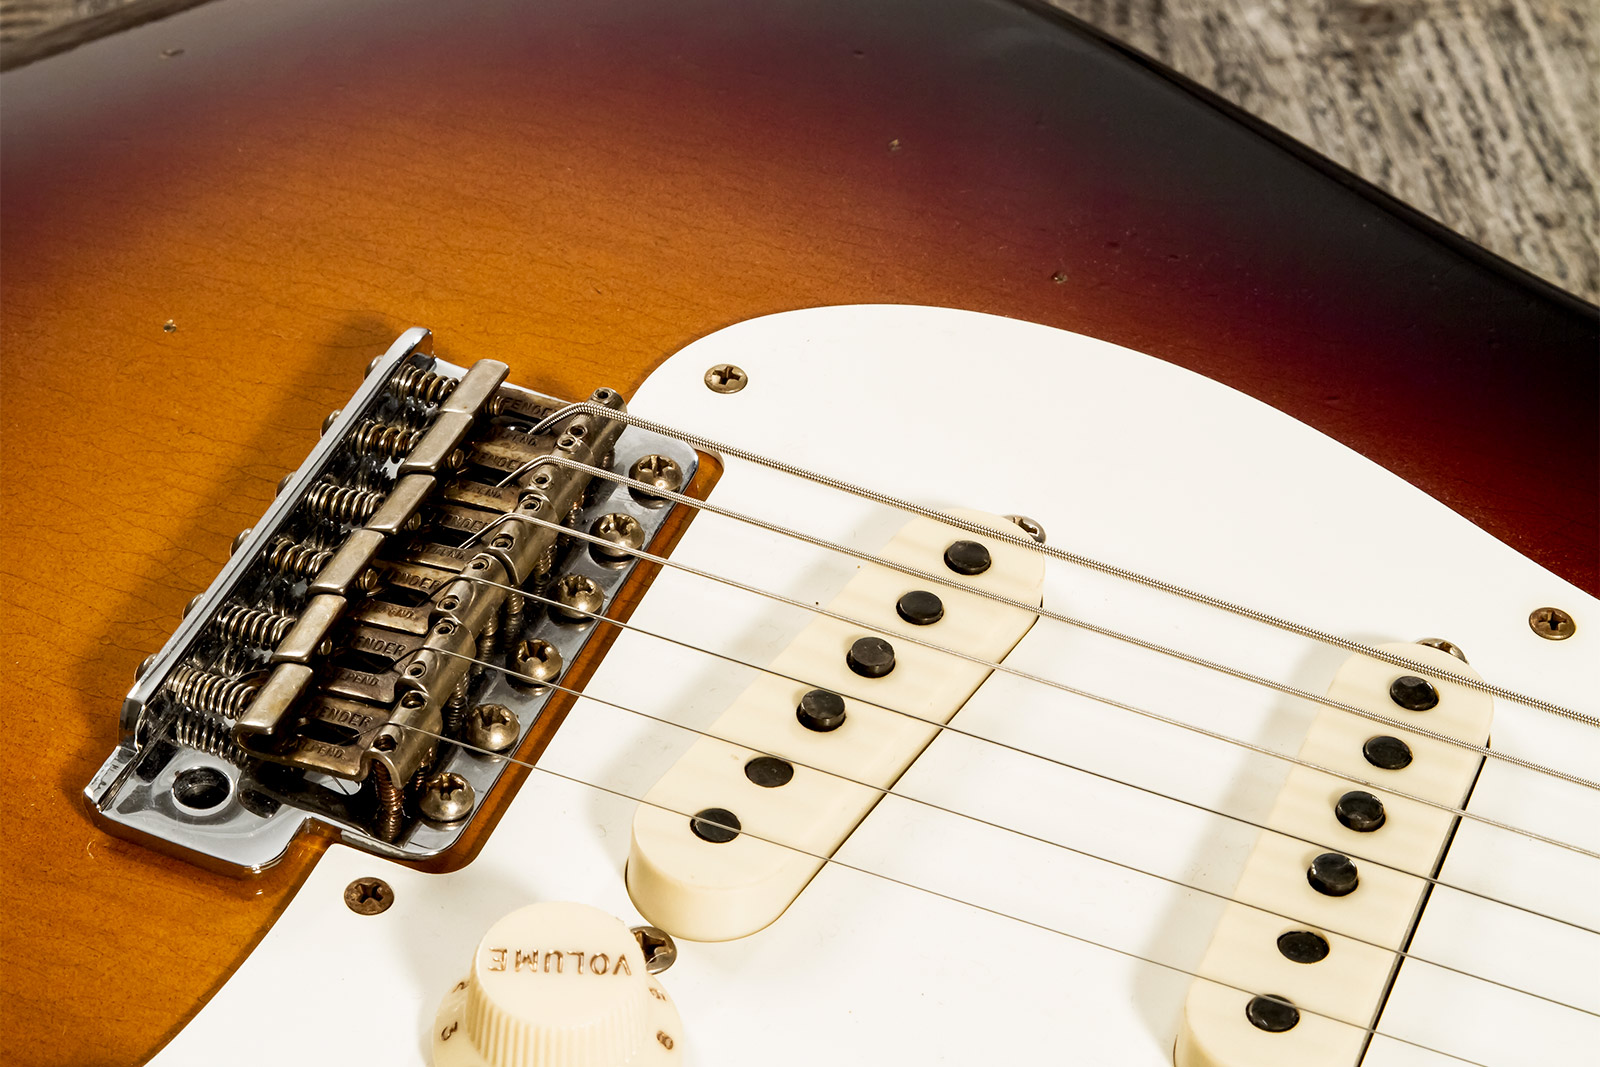 Fender Custom Shop Strat 1957 3s Trem Mn #cz571791 - Relic Wide Fade 2-color Sunburst - E-Gitarre in Str-Form - Variation 4